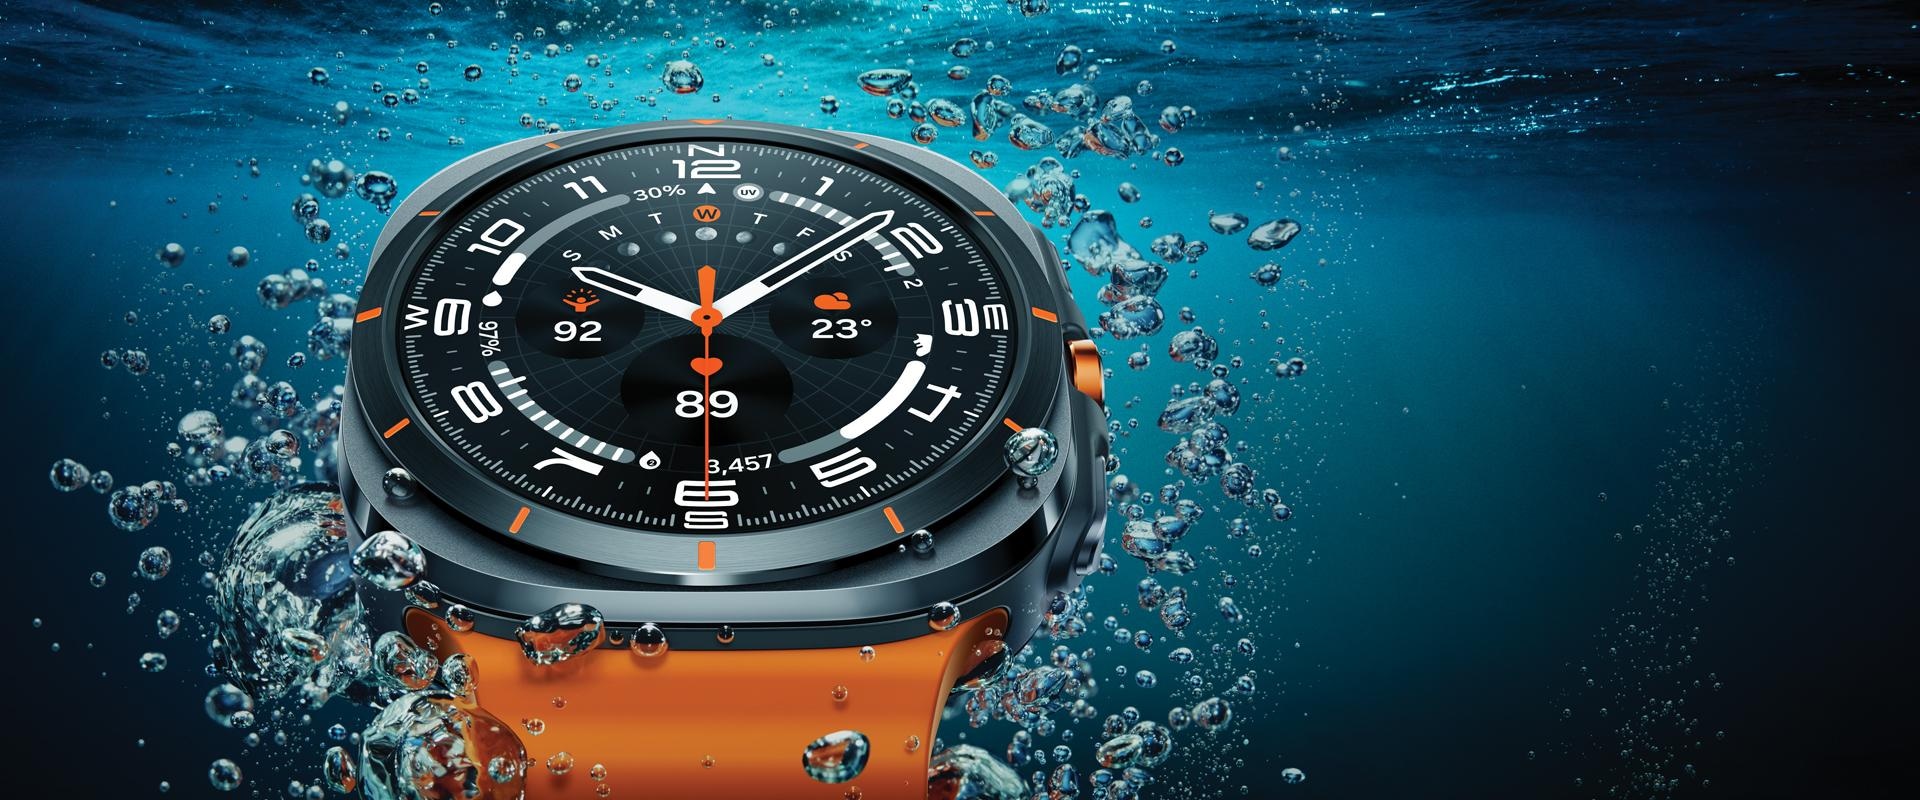 Дизайн Galaxy Watch Ultra хорошо просматривается благодаря размещению крупным планом в воде у самой поверхности.